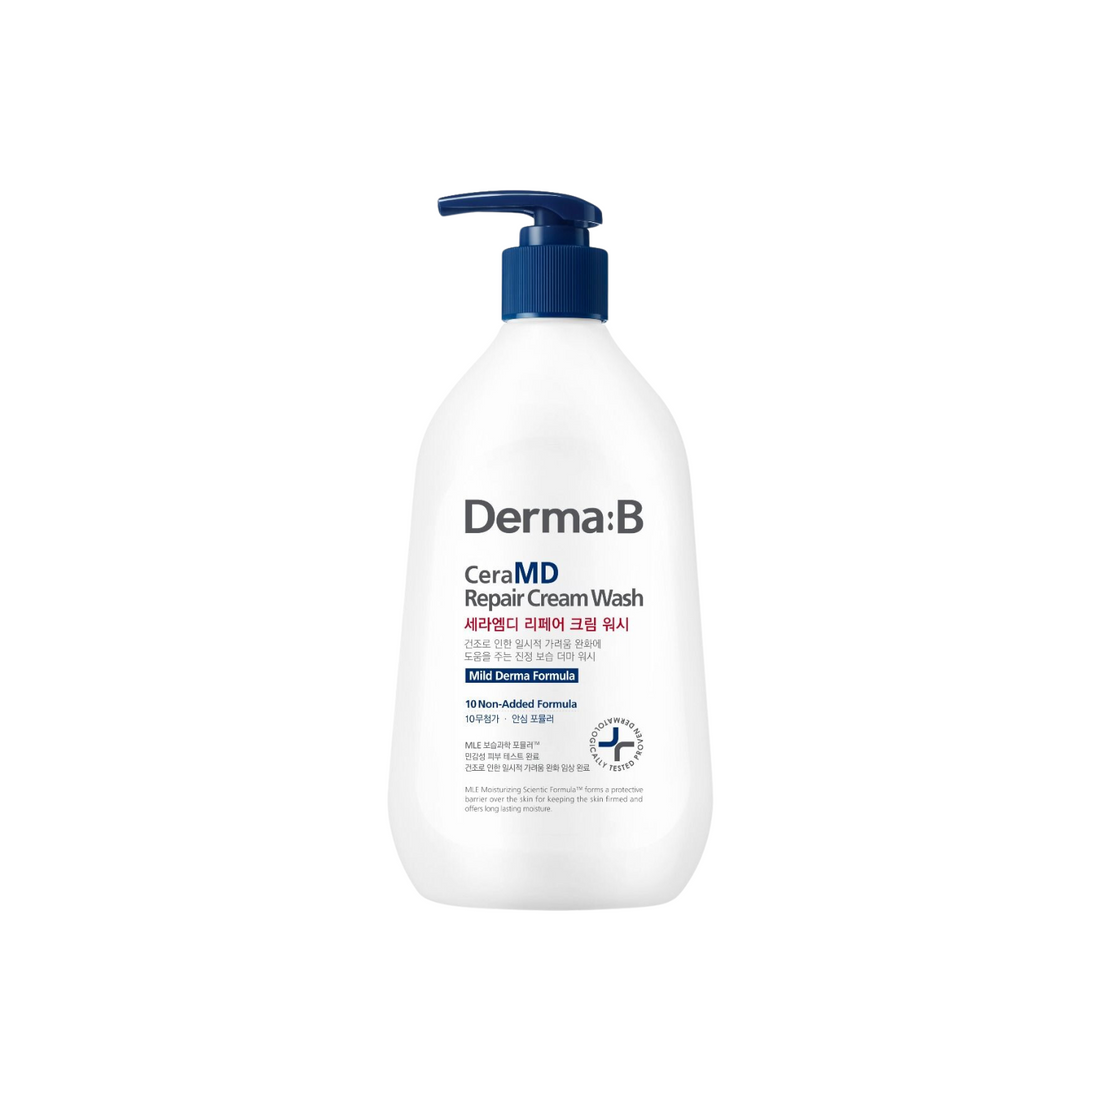 Derma:B CeraMD Cream Wash